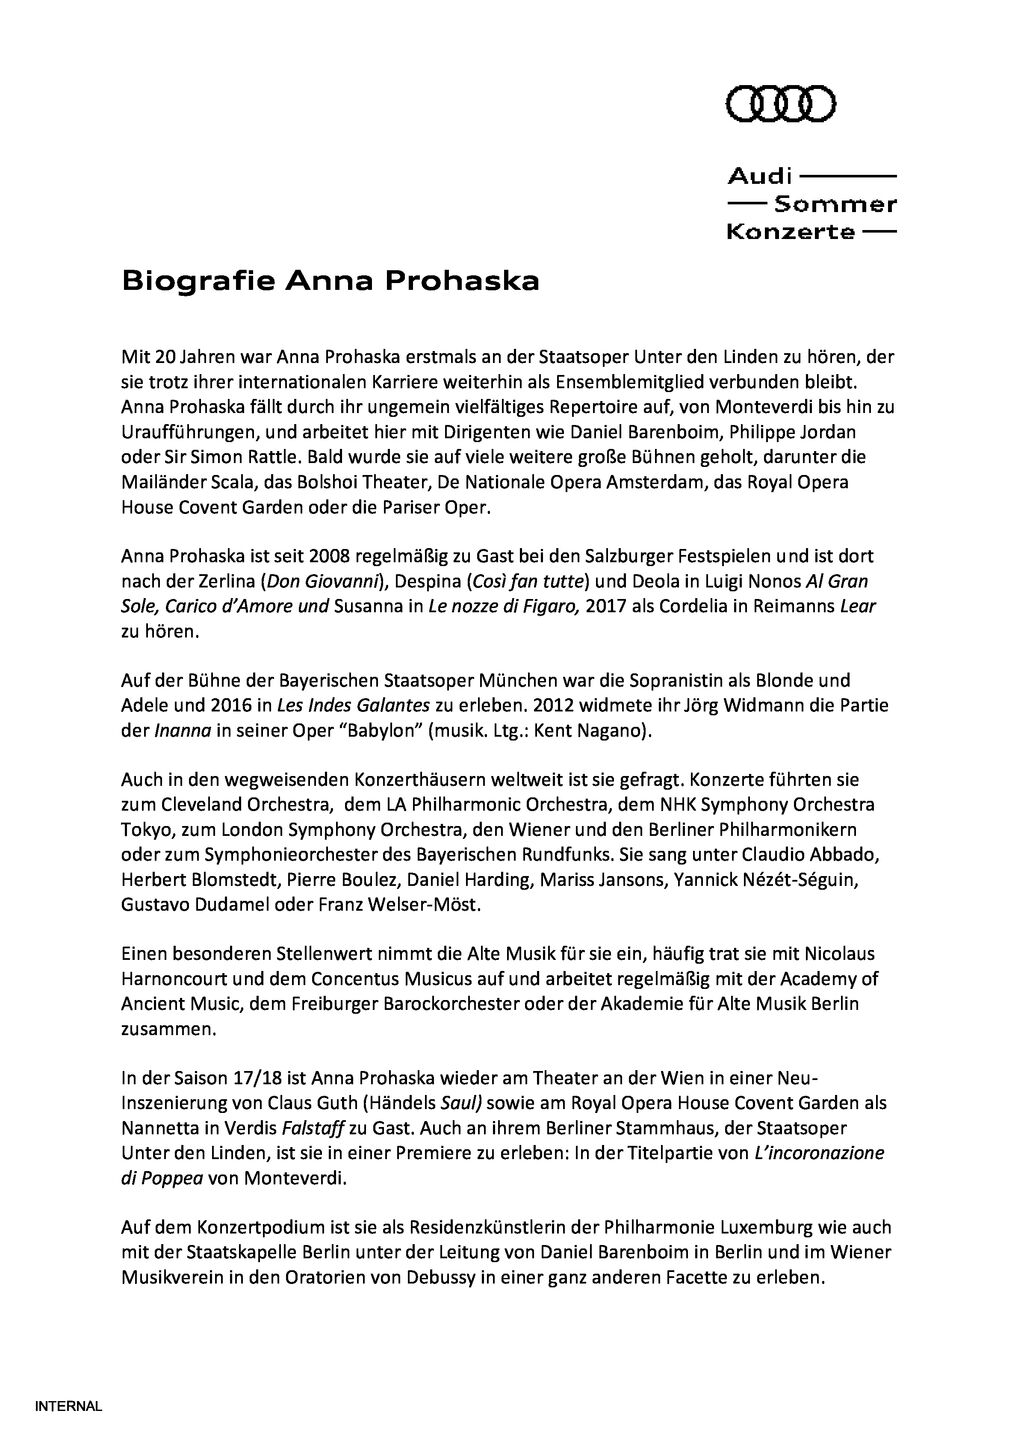 Biografie Anna Prohaska